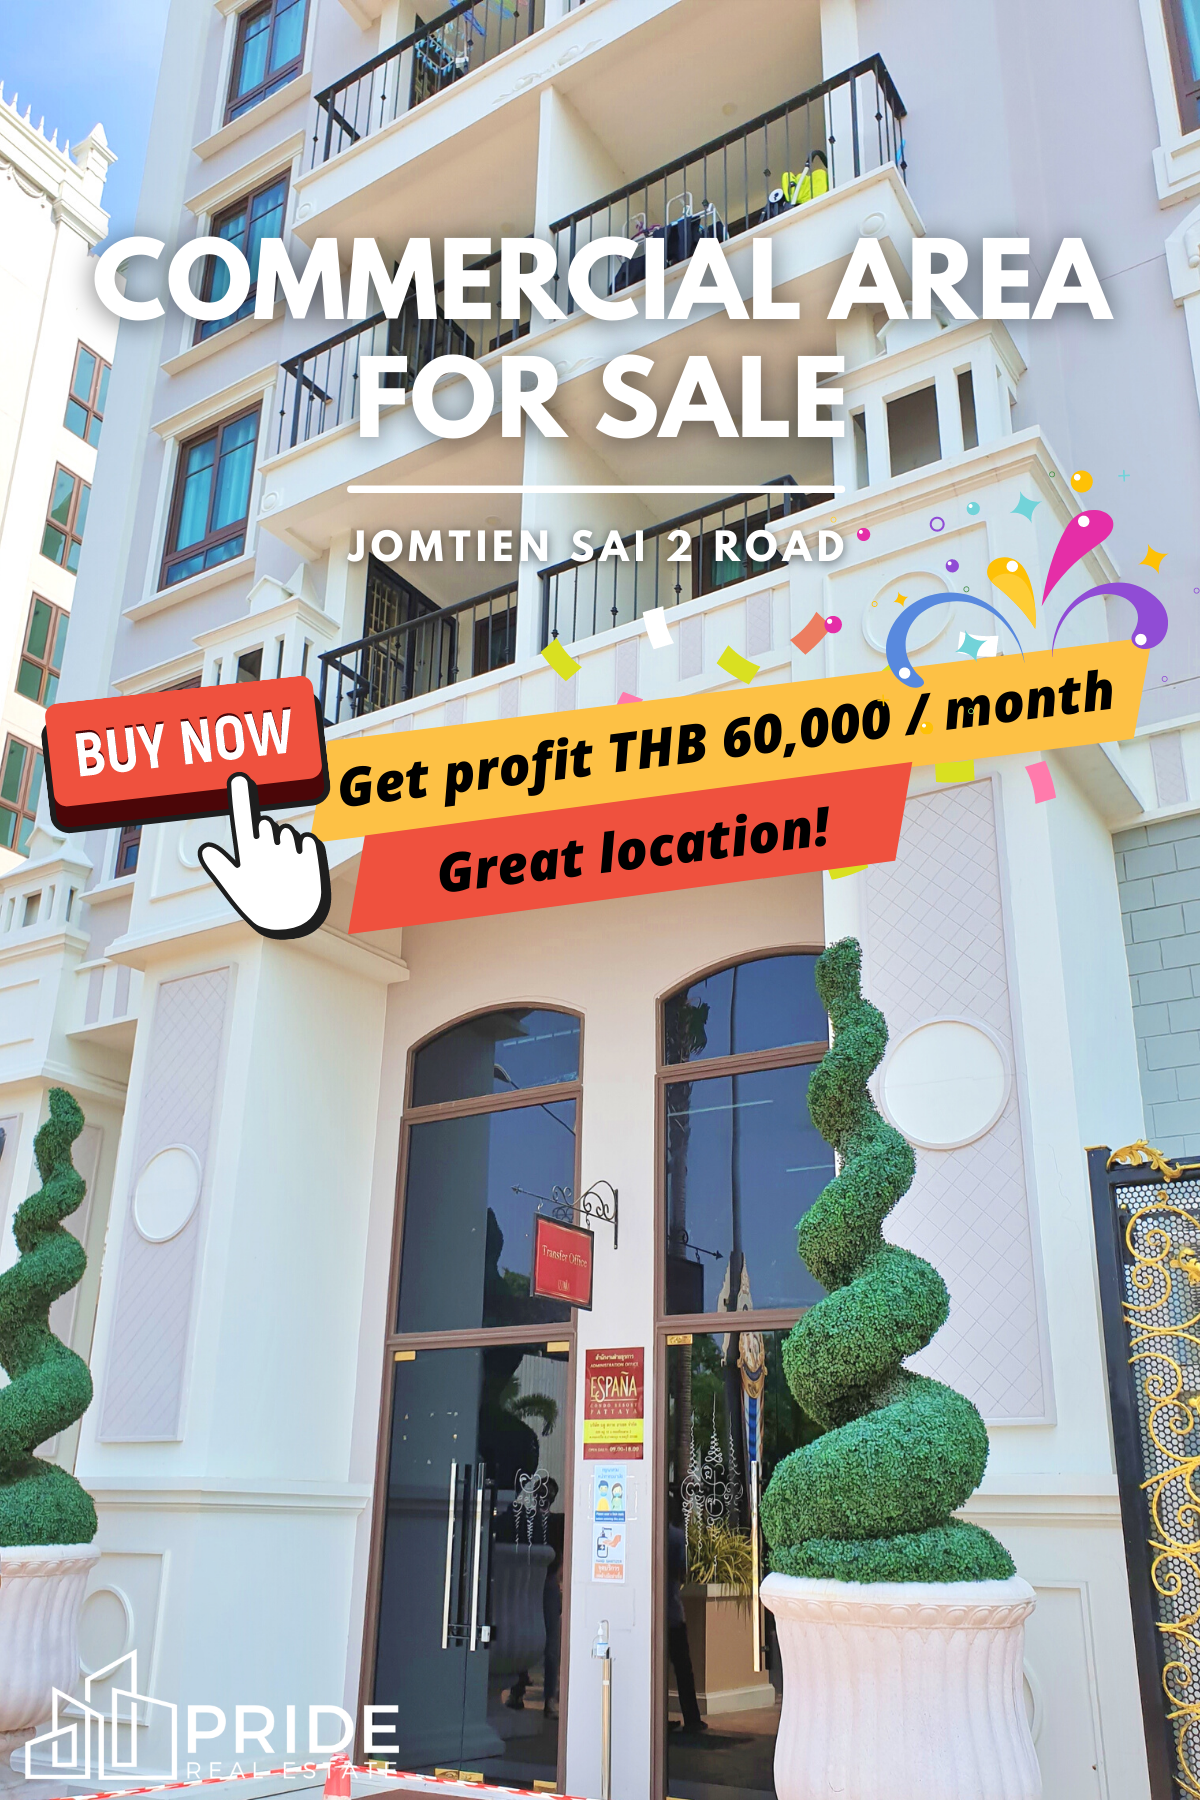 ฟรีทุกค่าใช้จ่ายวันโอน!! ขายพื้นที่เพื่อการพาณิชย์ ขายช็อปเพื่อการพาณิชย์ ติดถนนใหญ่จอมเทียนสาย 2 - Commercial Area For Sale on Jomtien Sai 2 Road